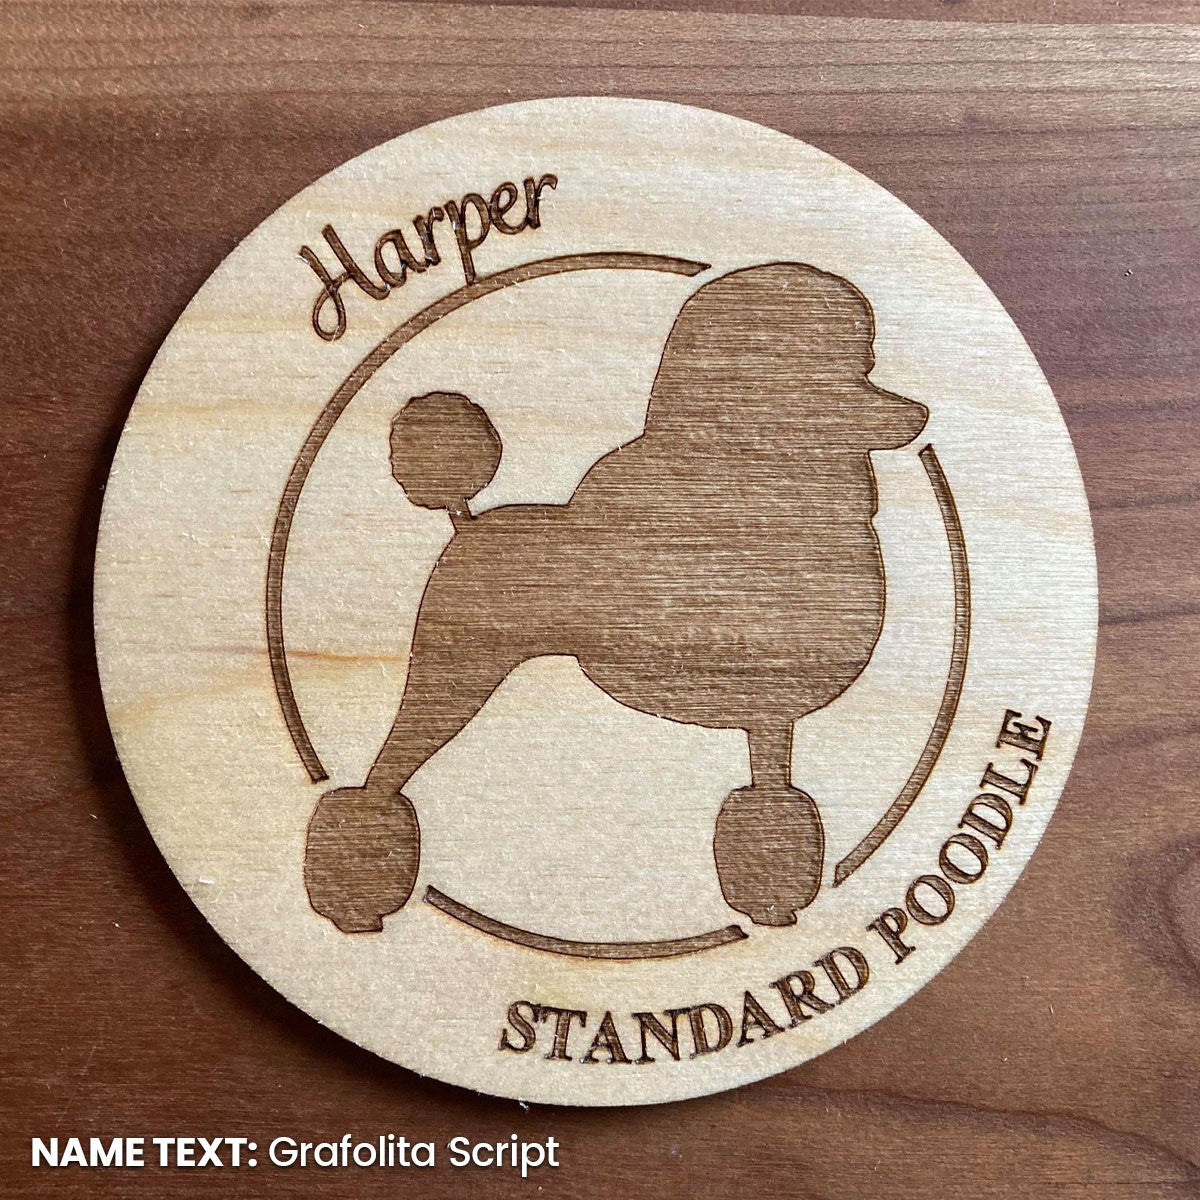 Standard Poodle Coaster